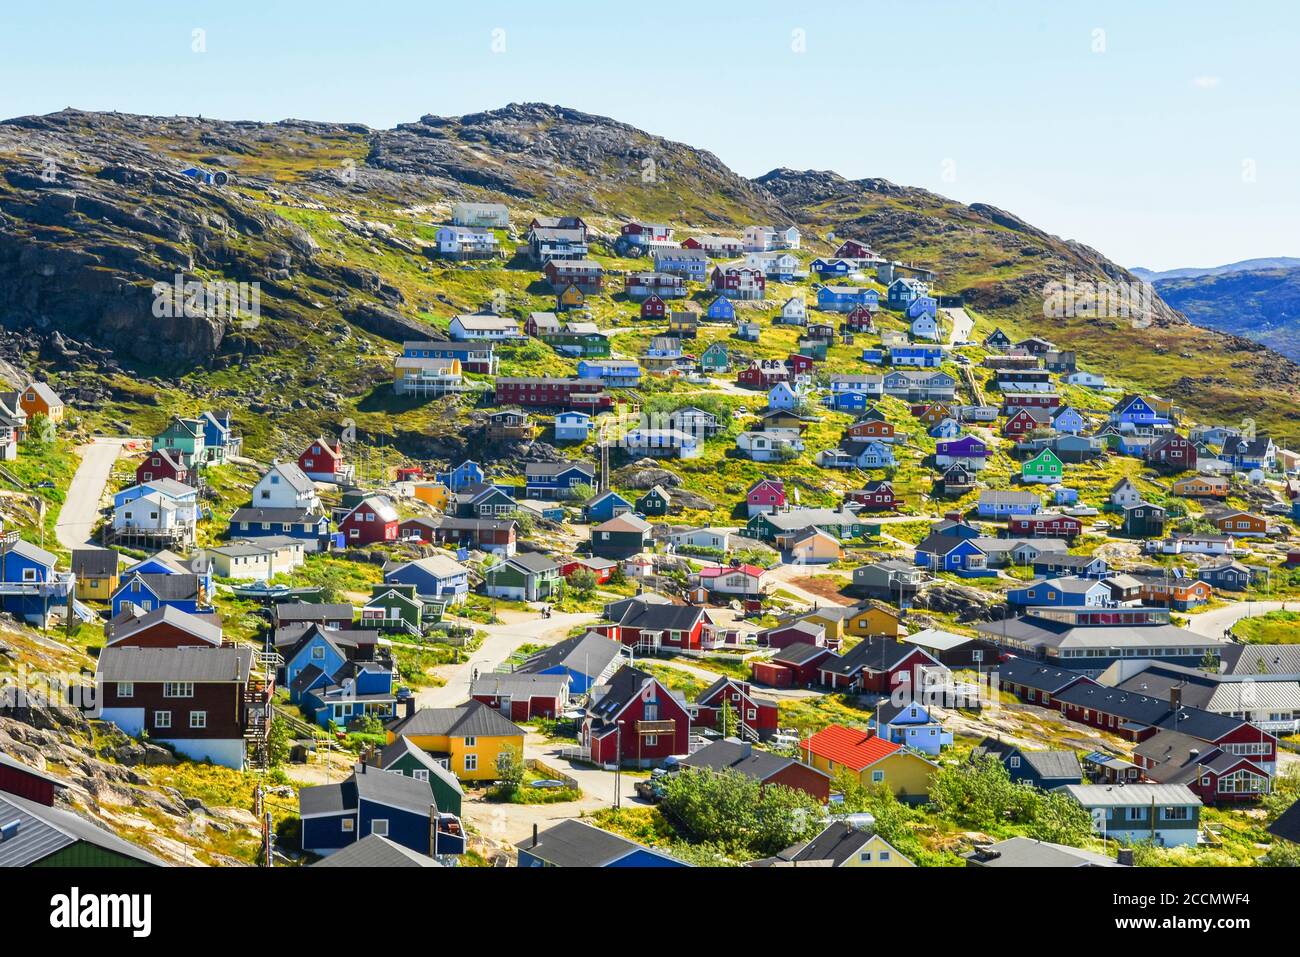 Hafen und Häuser in Qaqortoq, in der Gemeinde Kujalleq in Südgrönland, in der Nähe von Kap Thorvaldsen. Stockfoto